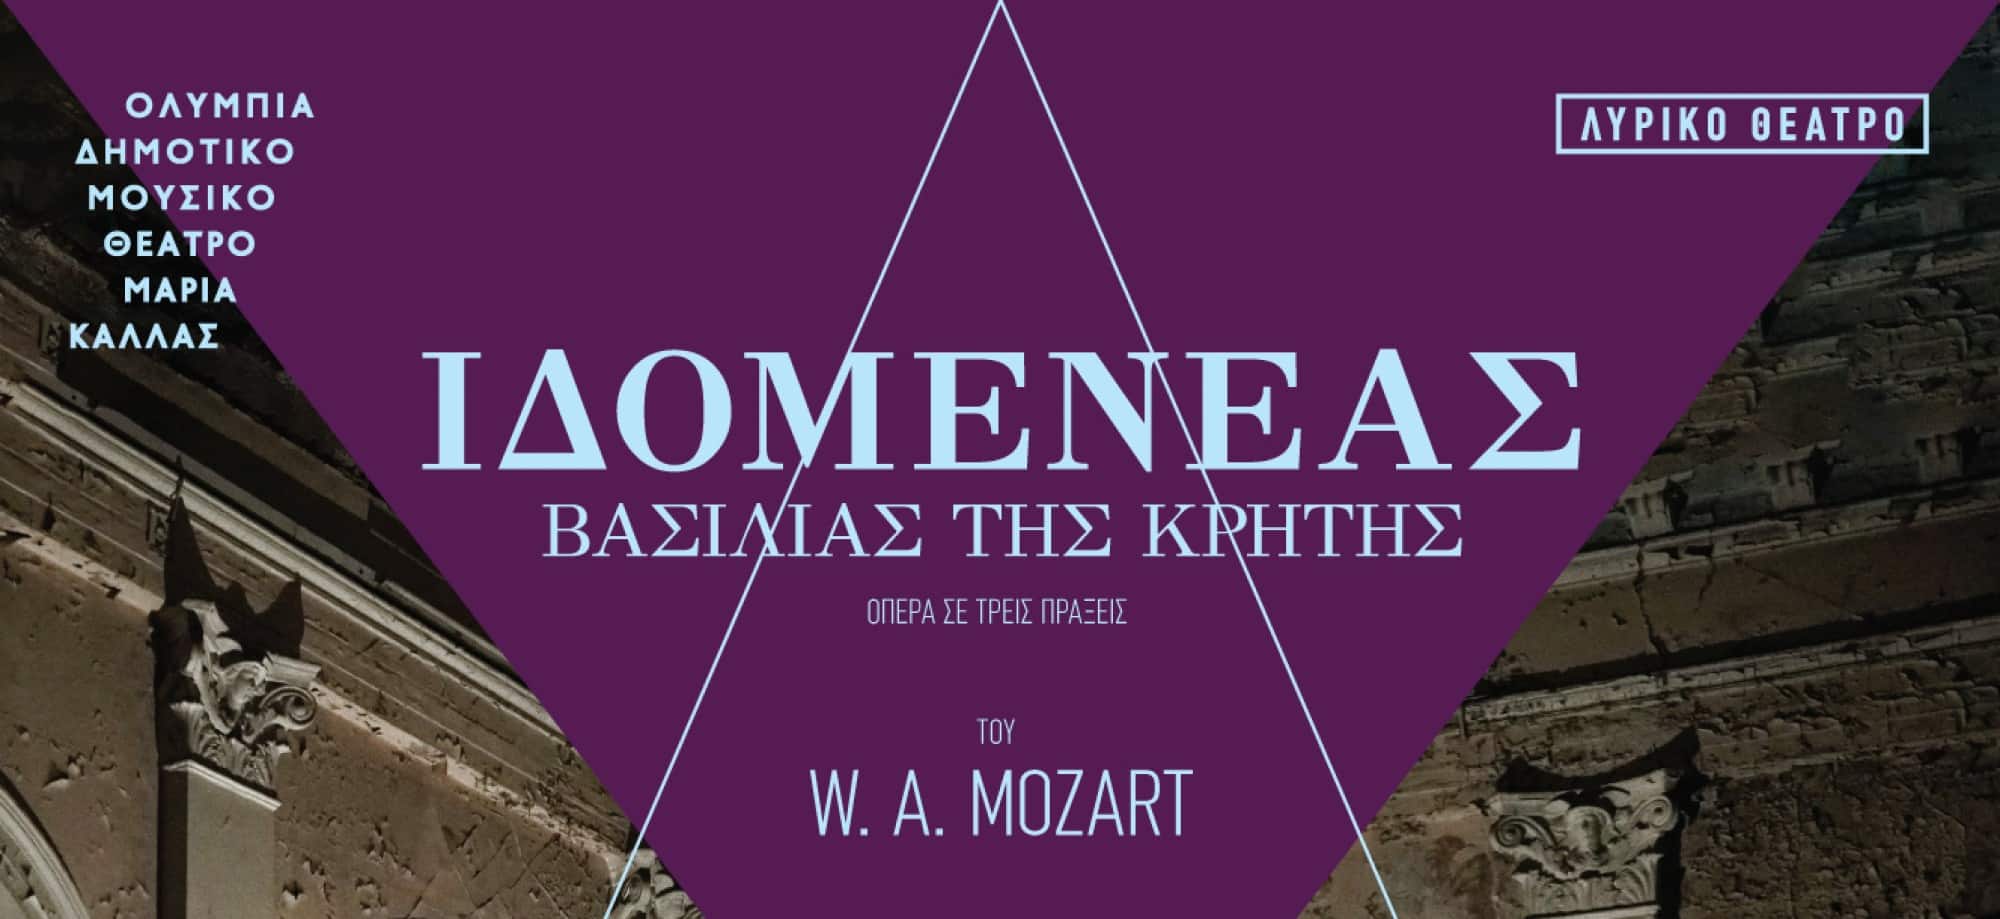 Η παράσταση "Ιδομενέας" ανεβαίνει στο Δημοτικό Θέατρο Ολύμπια